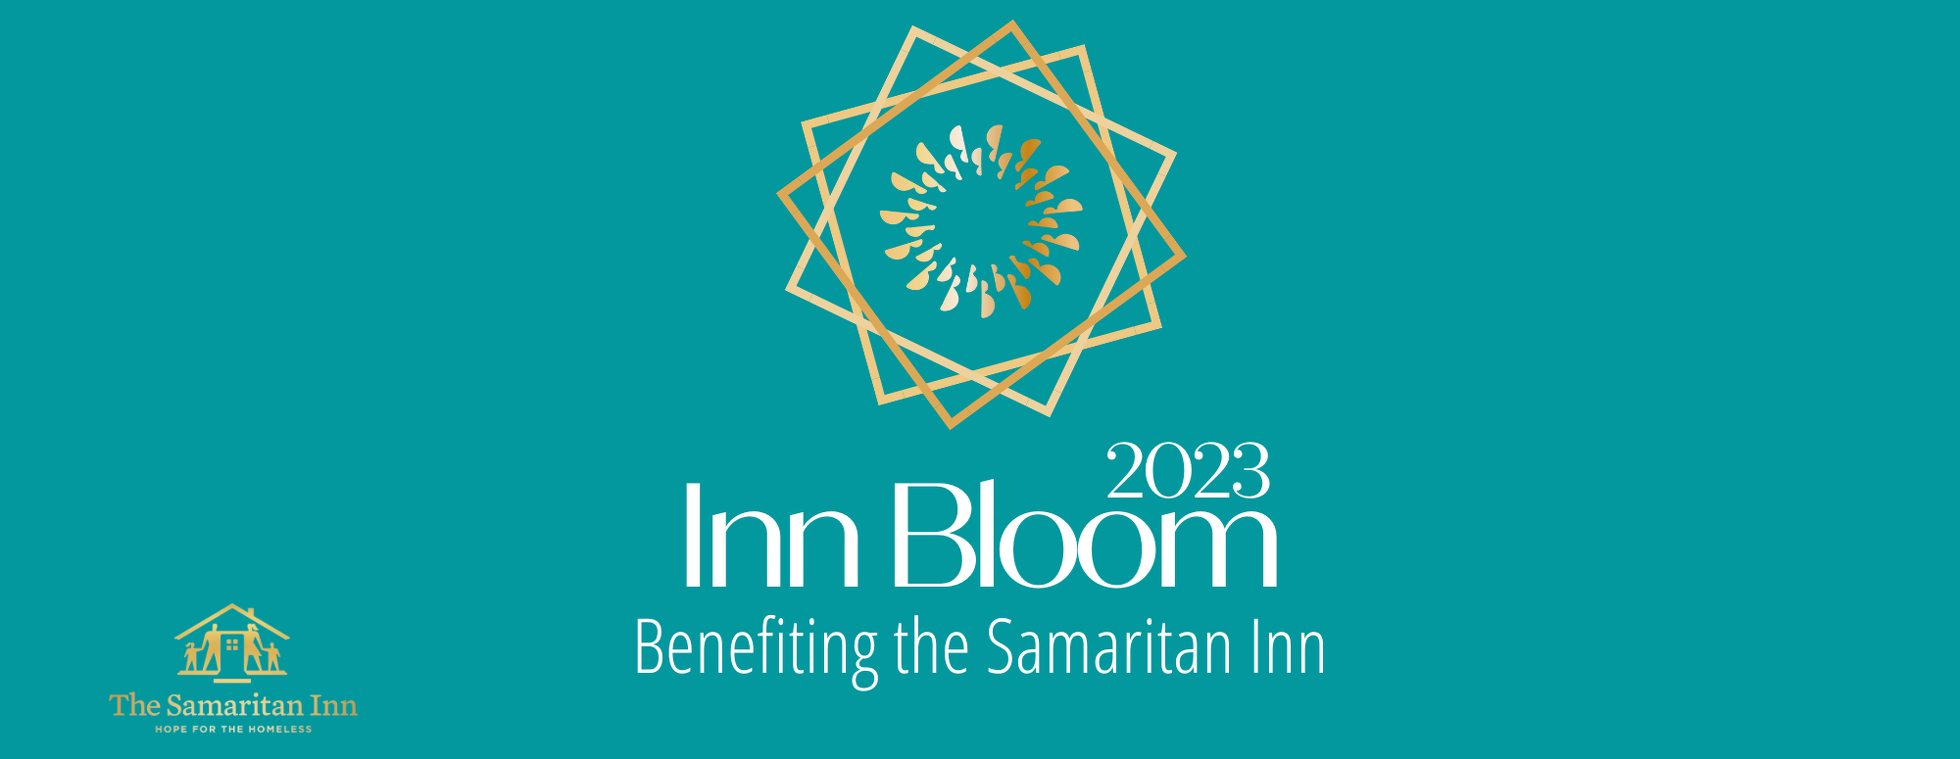 Inn Bloom, a benefit for The Samaritan Inn